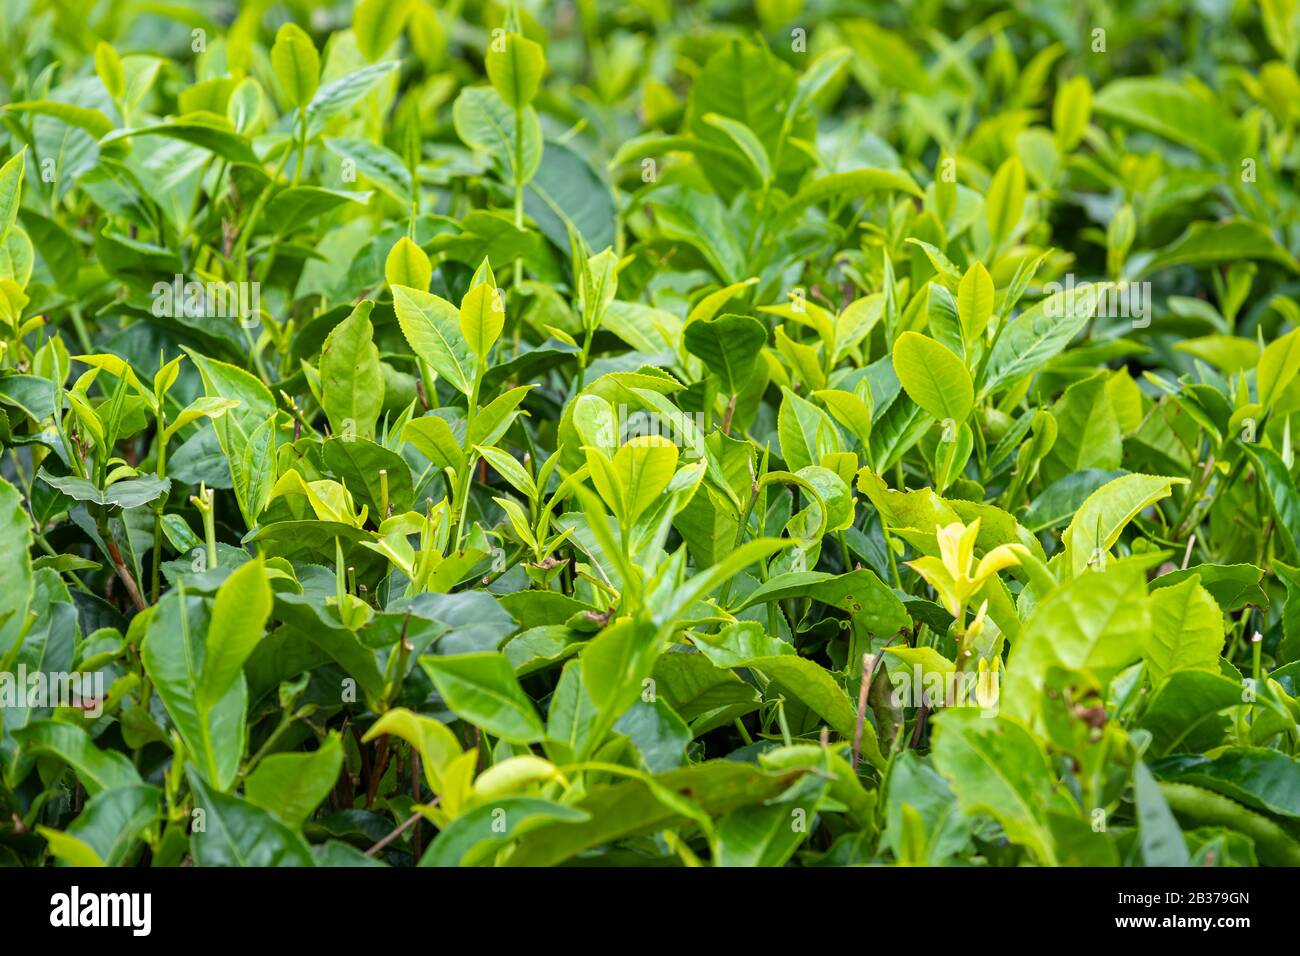 Mauritius, Distrikt Savanne, Grand Bois, Domaine de Bois Chéri, der größte Teeproduzent auf Mauritius, Teeplantagen Stockfoto